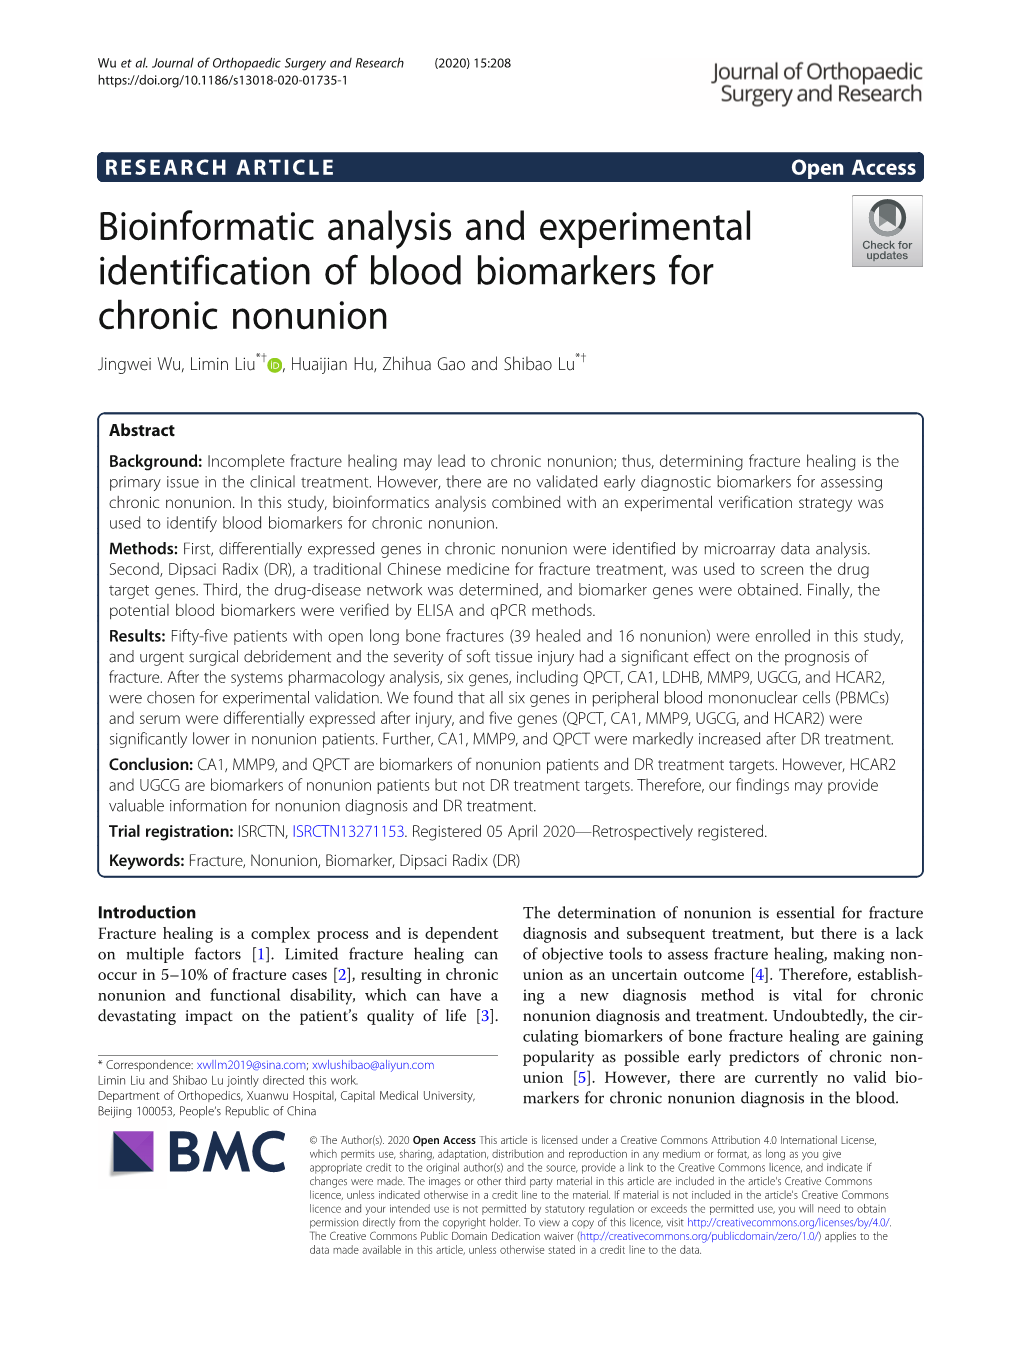 Bioinformatic Analysis and Experimental Identification of Blood Biomarkers for Chronic Nonunion Jingwei Wu, Limin Liu*† , Huaijian Hu, Zhihua Gao and Shibao Lu*†